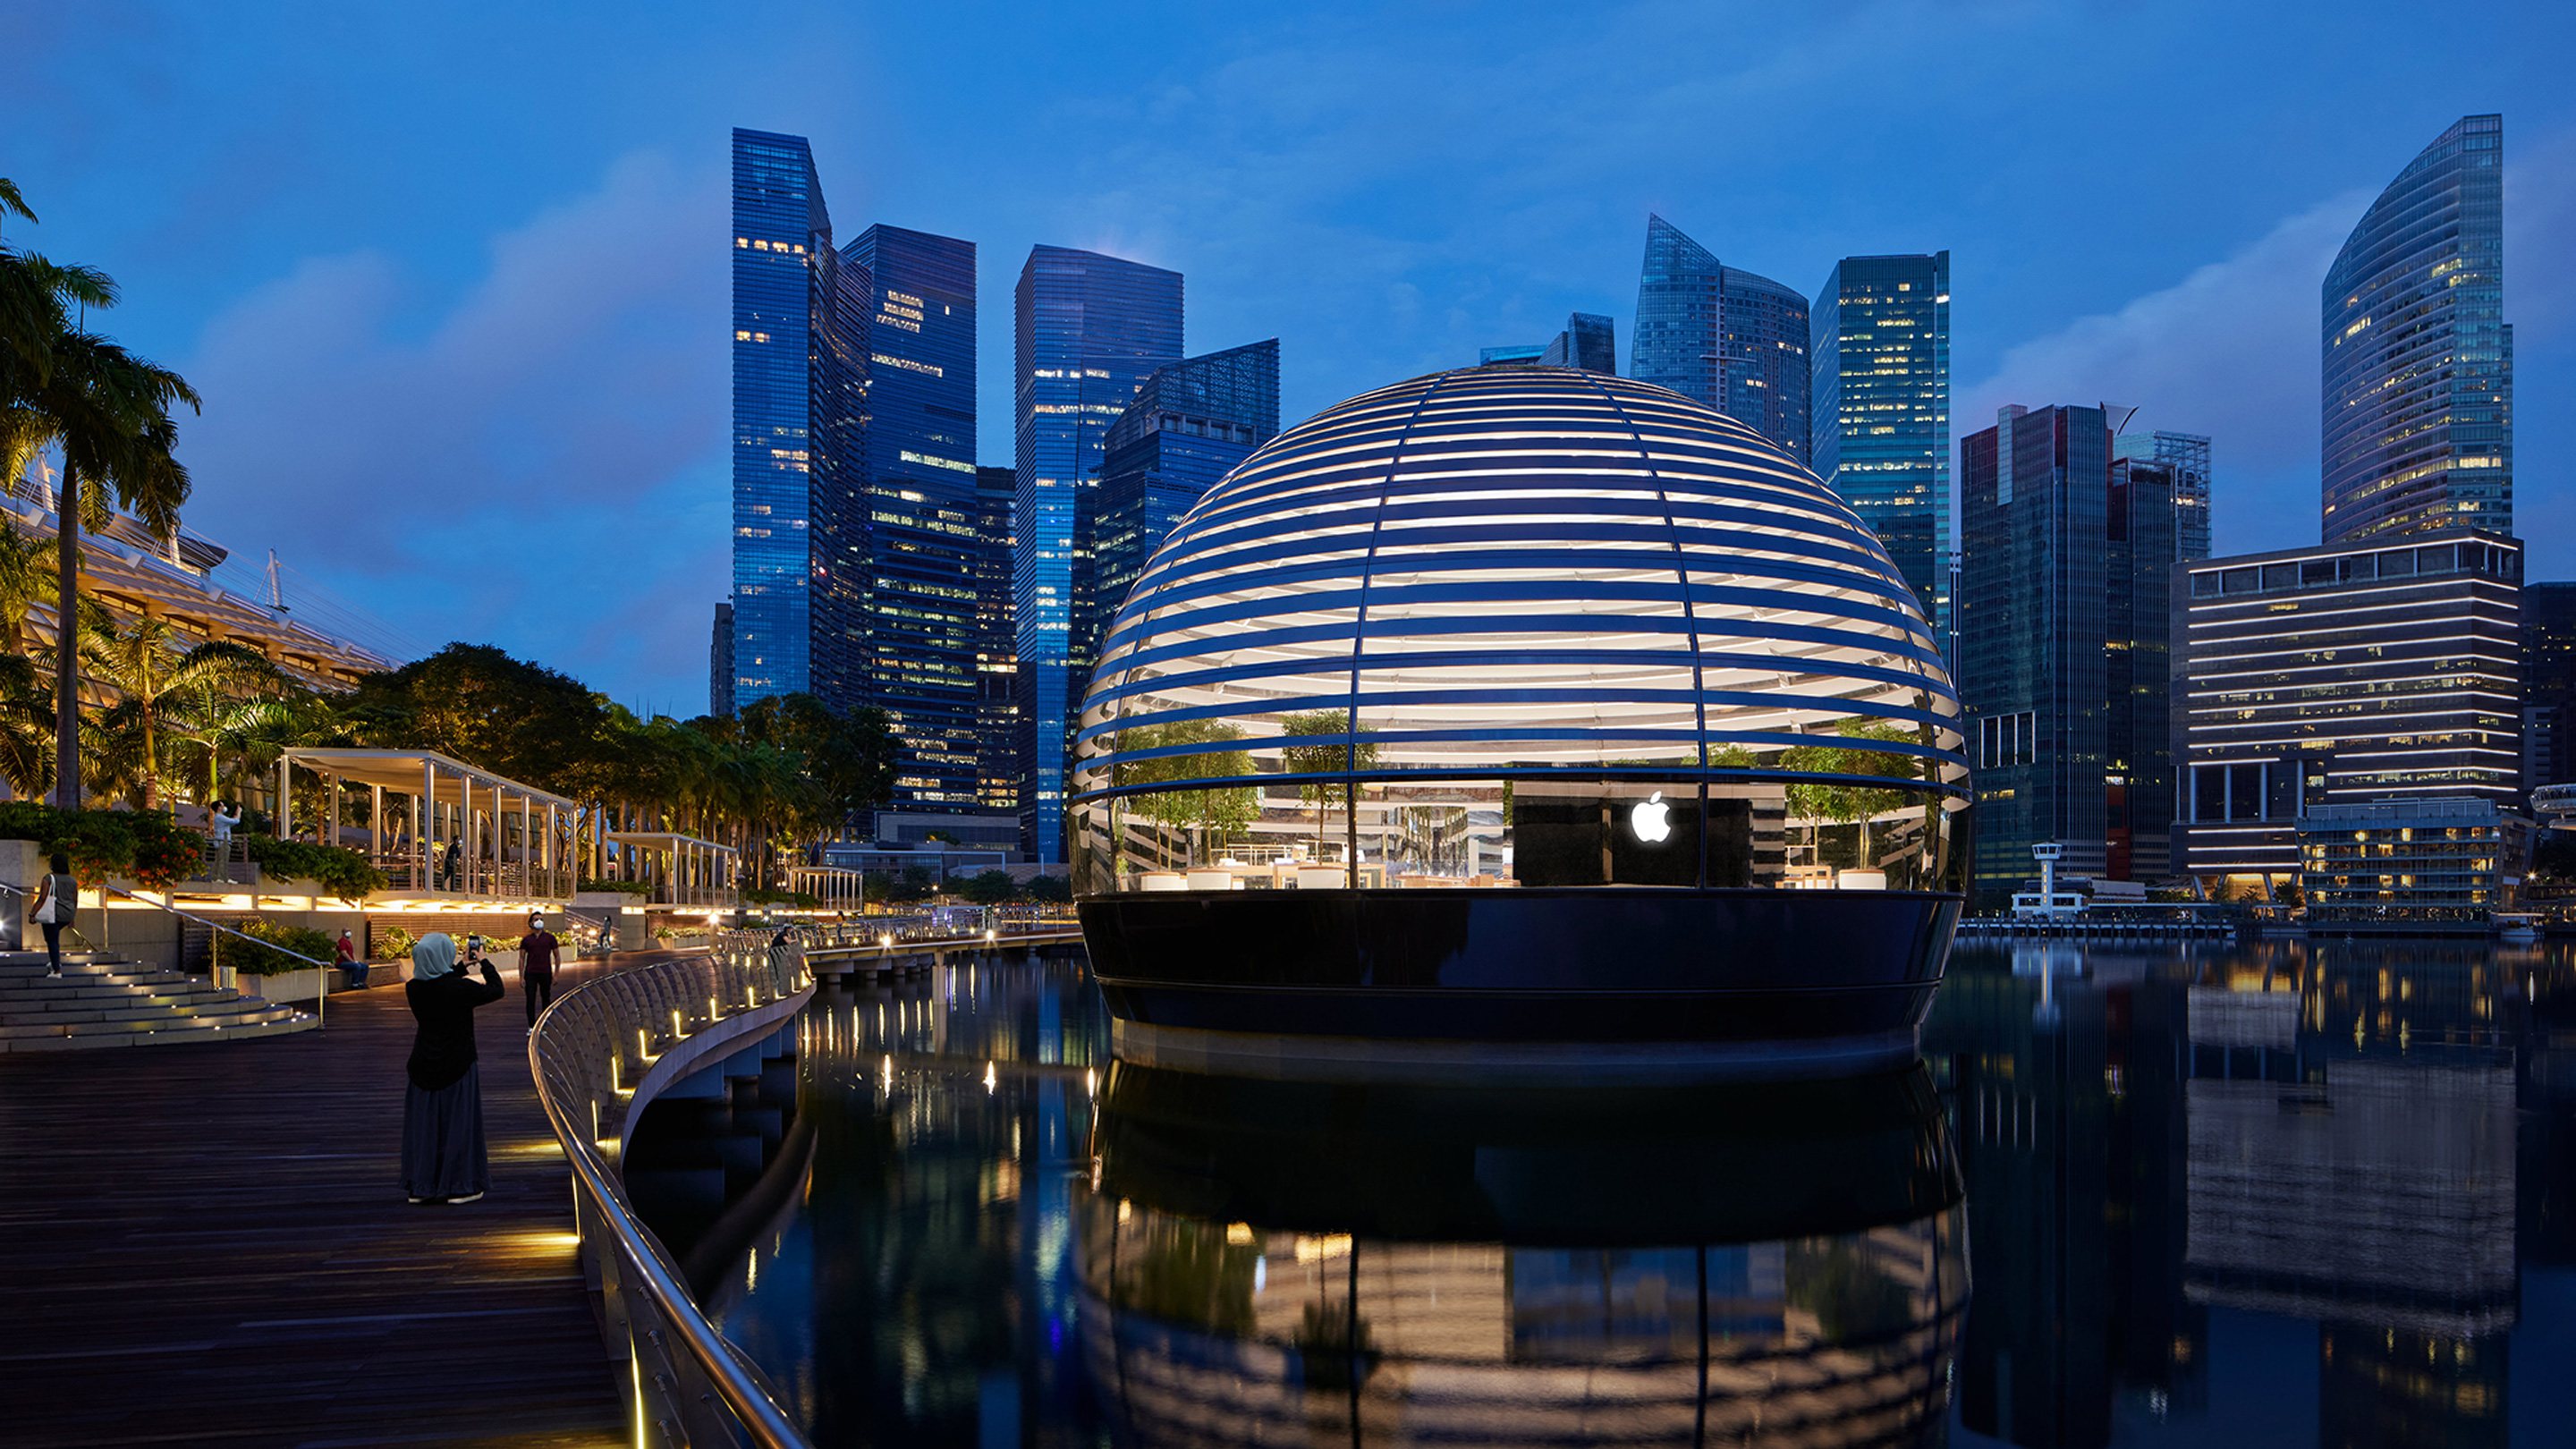 싱가포르 마리나 베이 샌즈 애플 스토어 오픈 - Apple Marina Bay Sands